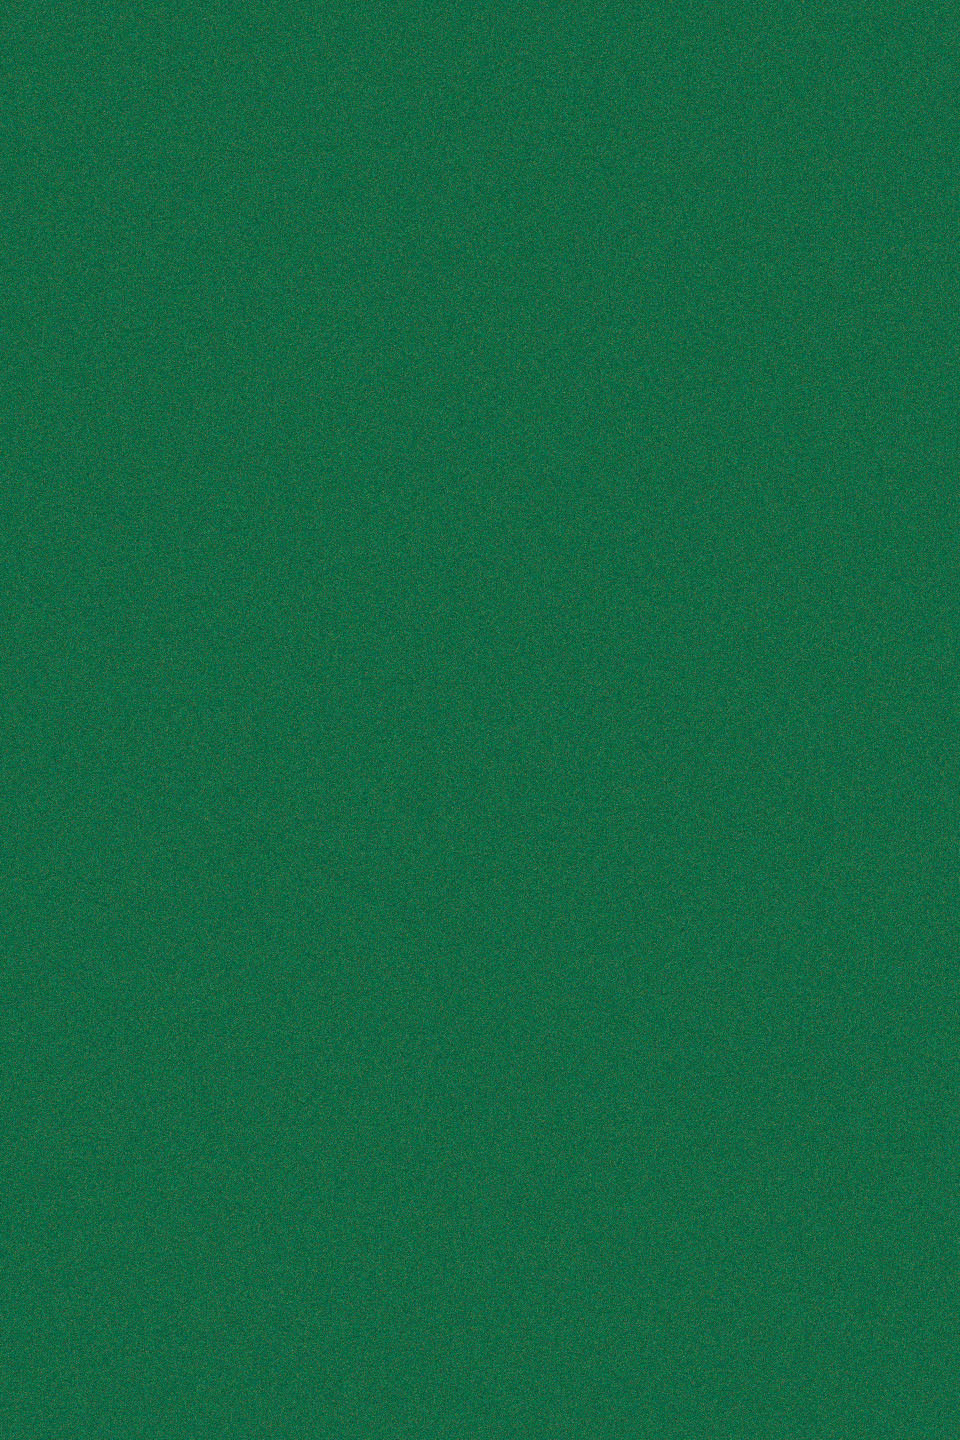 0003-348 D-C-fix 1х0.45м Пленка самоклеящаяся Велюр зеленый бильярдный